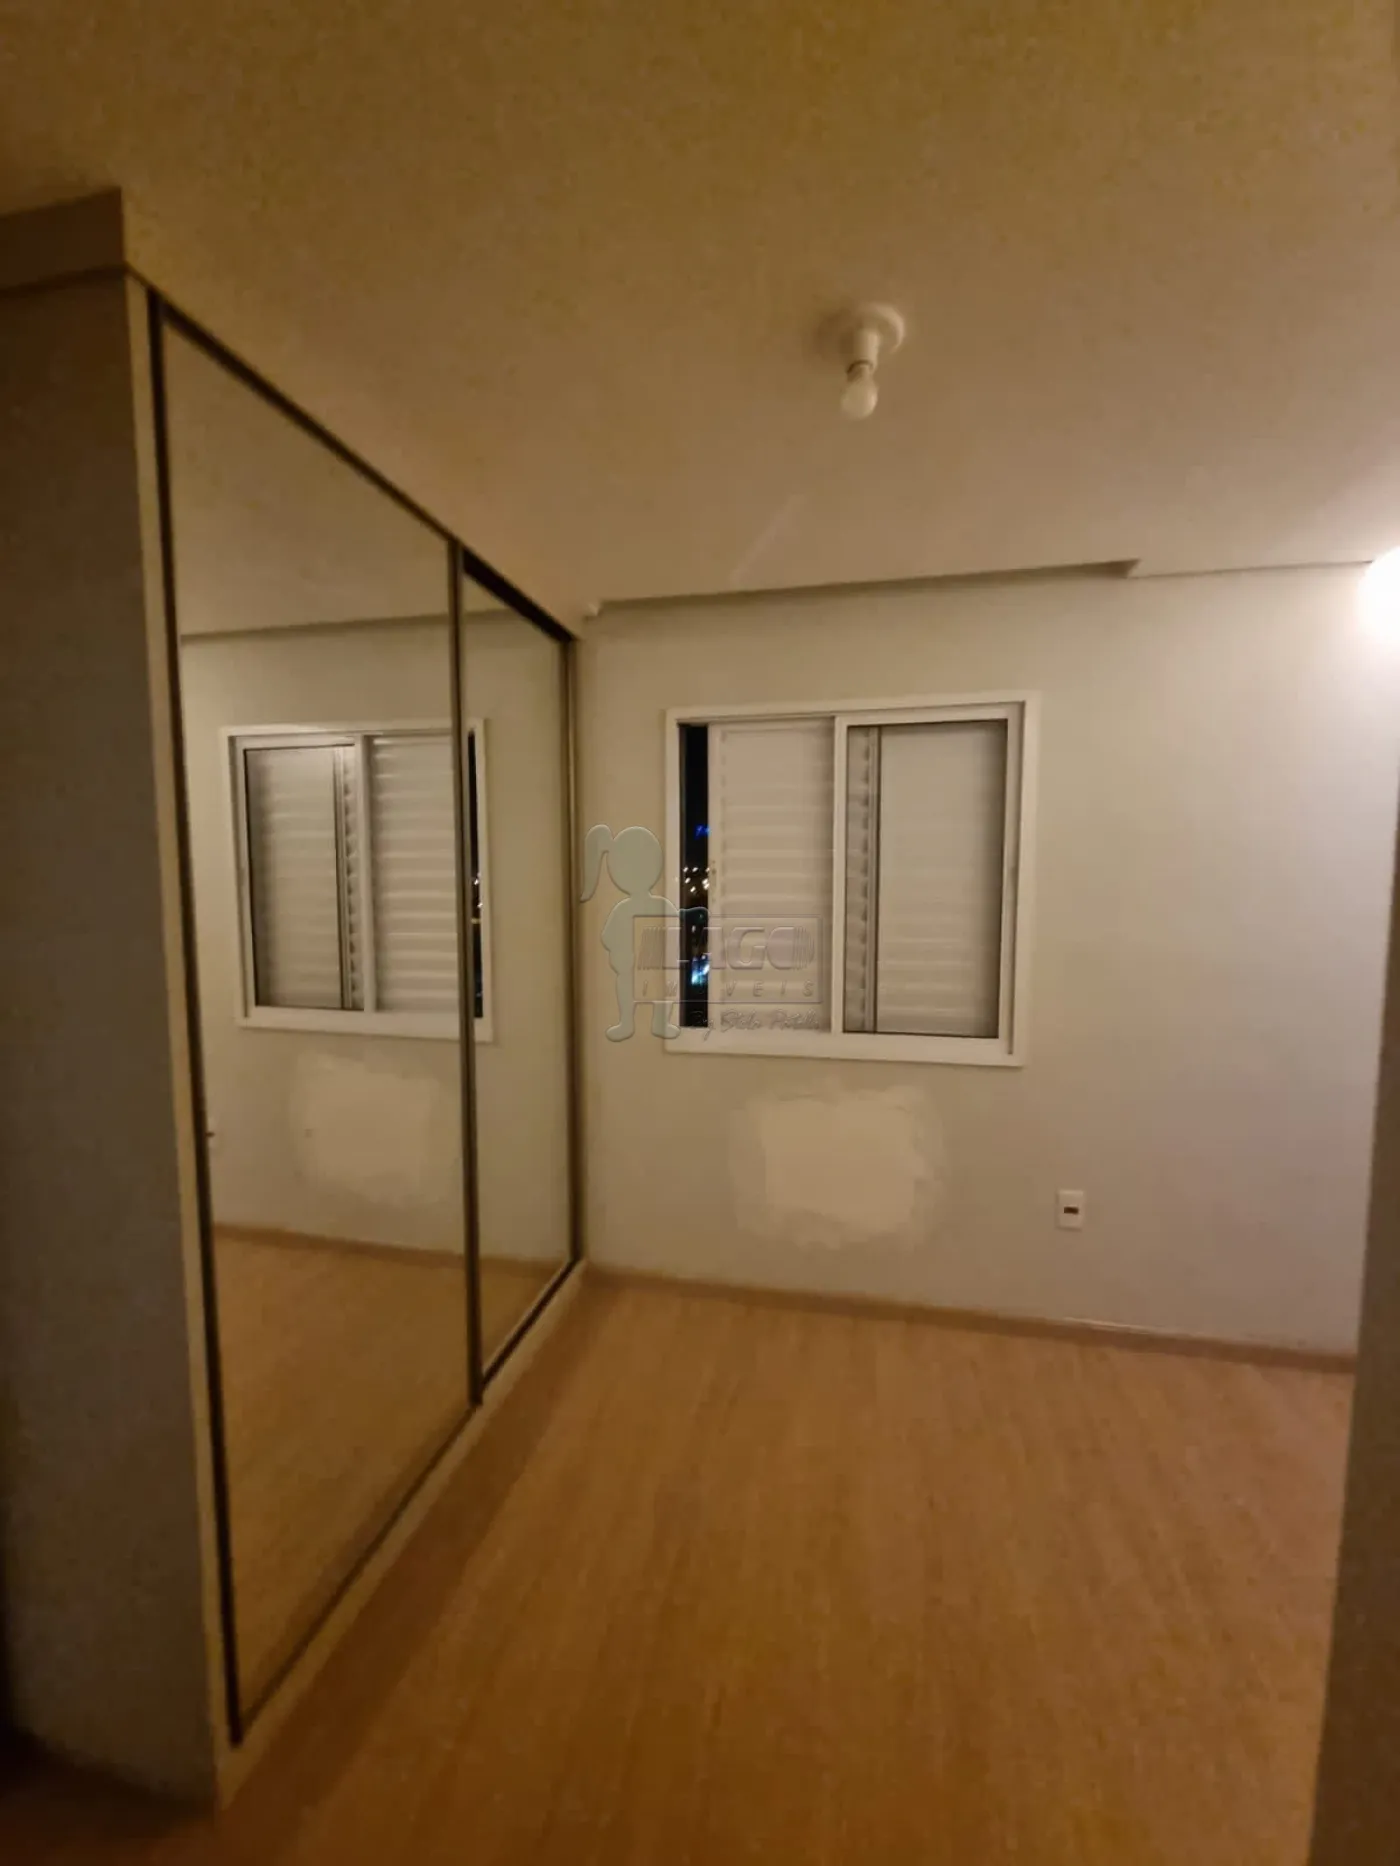 Comprar Apartamento / Padrão em Ribeirão Preto R$ 380.000,00 - Foto 10